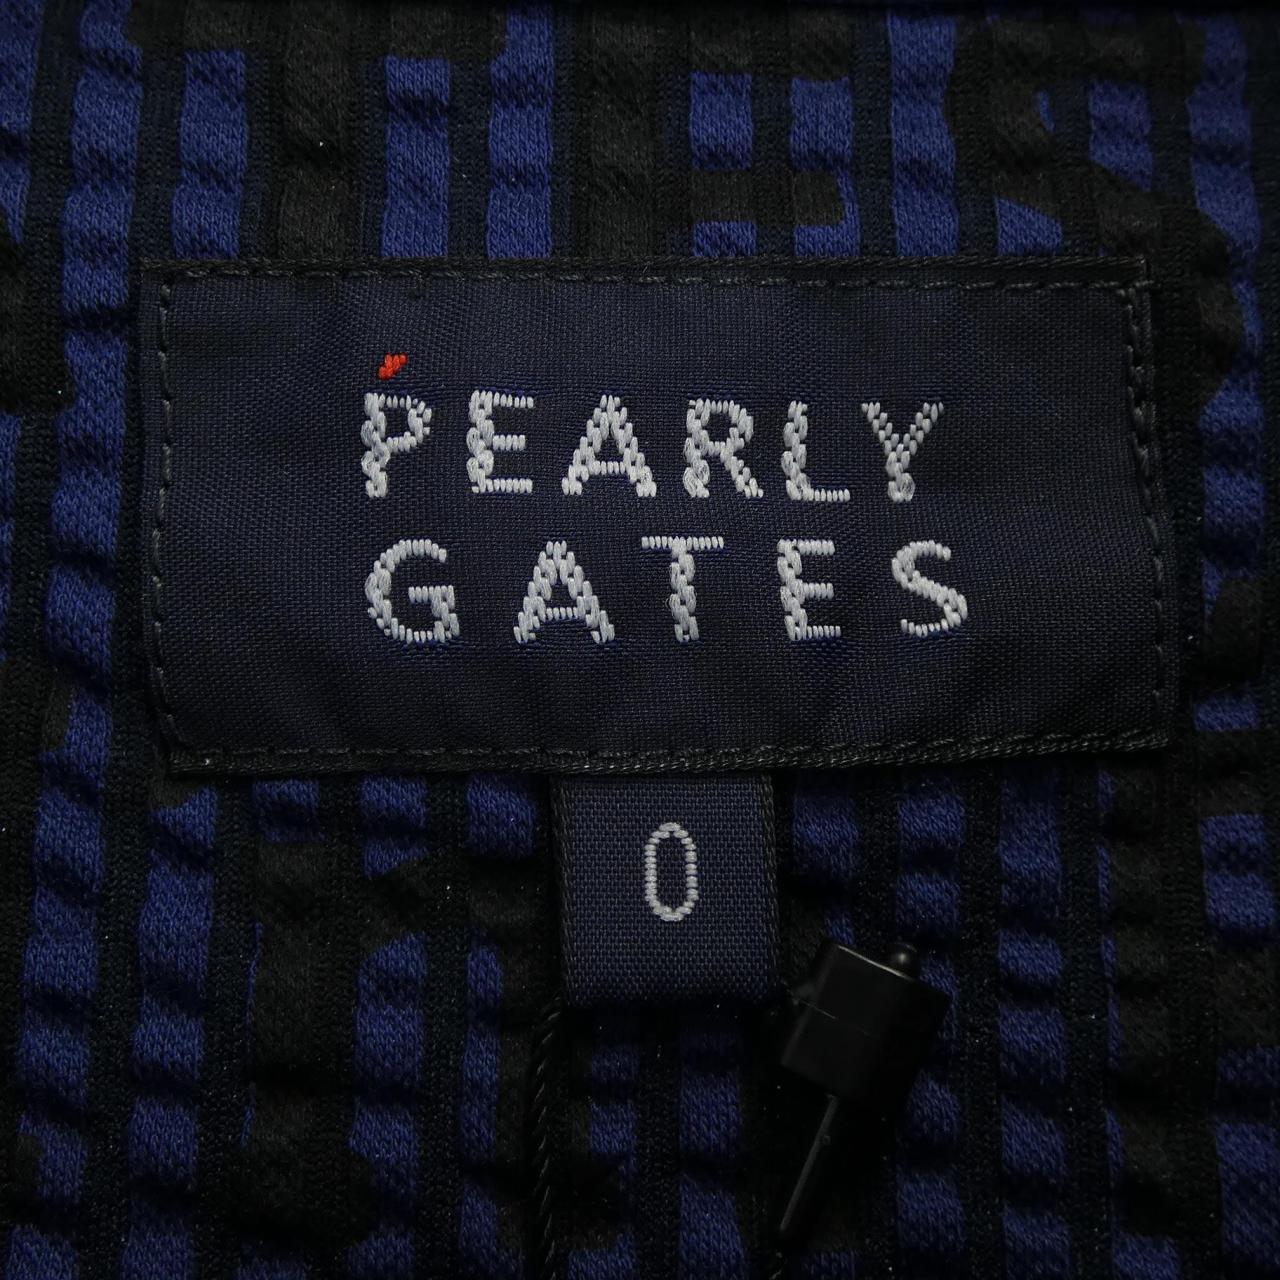 パーリーゲイツ PEARLY GATES トップス